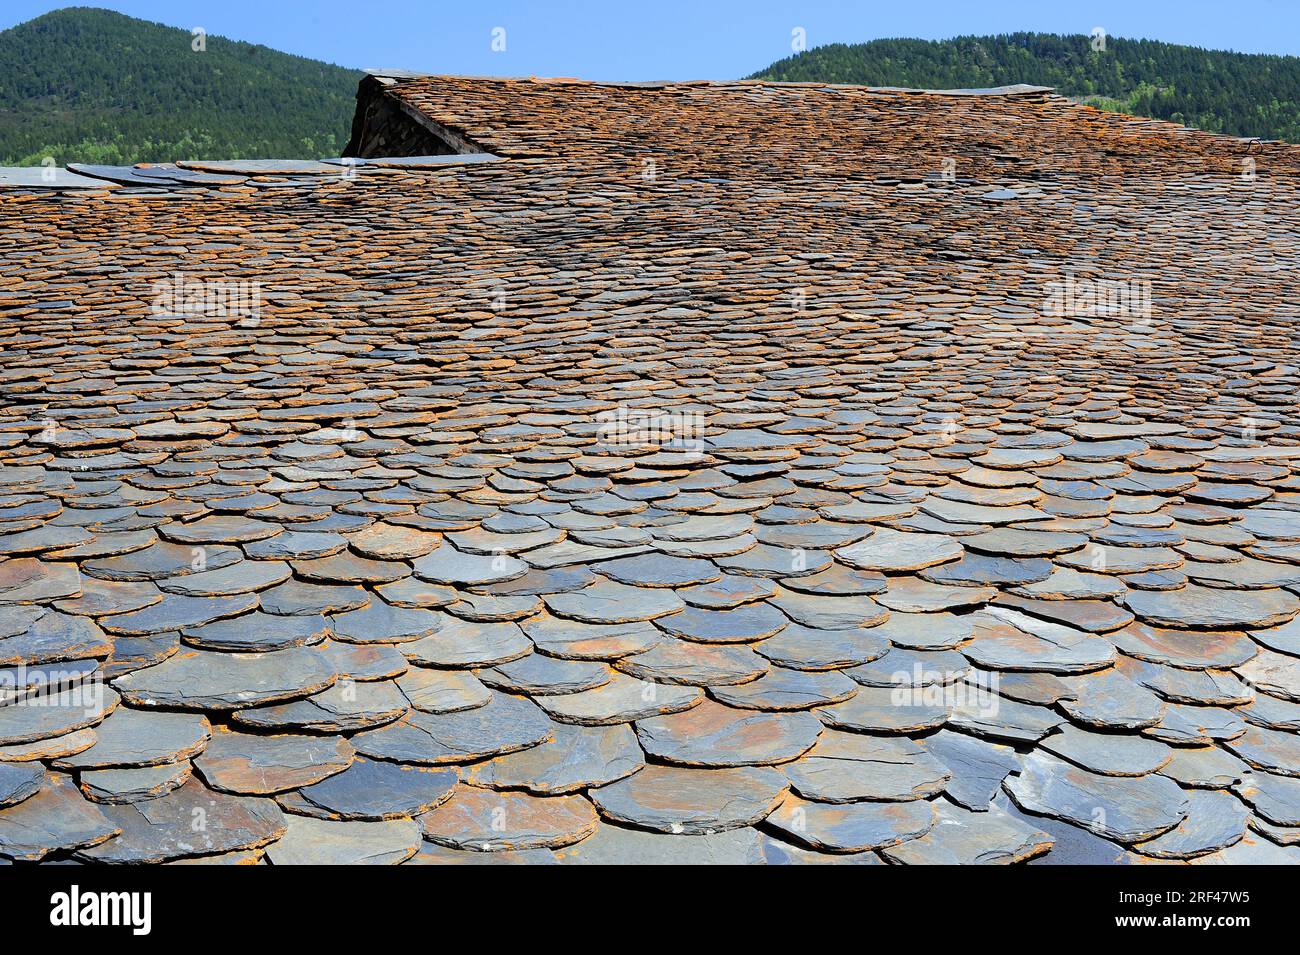 Dachschiefer. Schiefer ist ein spaltbares verdichtetem Sedimentgestein. Dieses Foto wurde in Pallars Sobira, Lleida, Katalonien, Spanien aufgenommen. Stockfoto